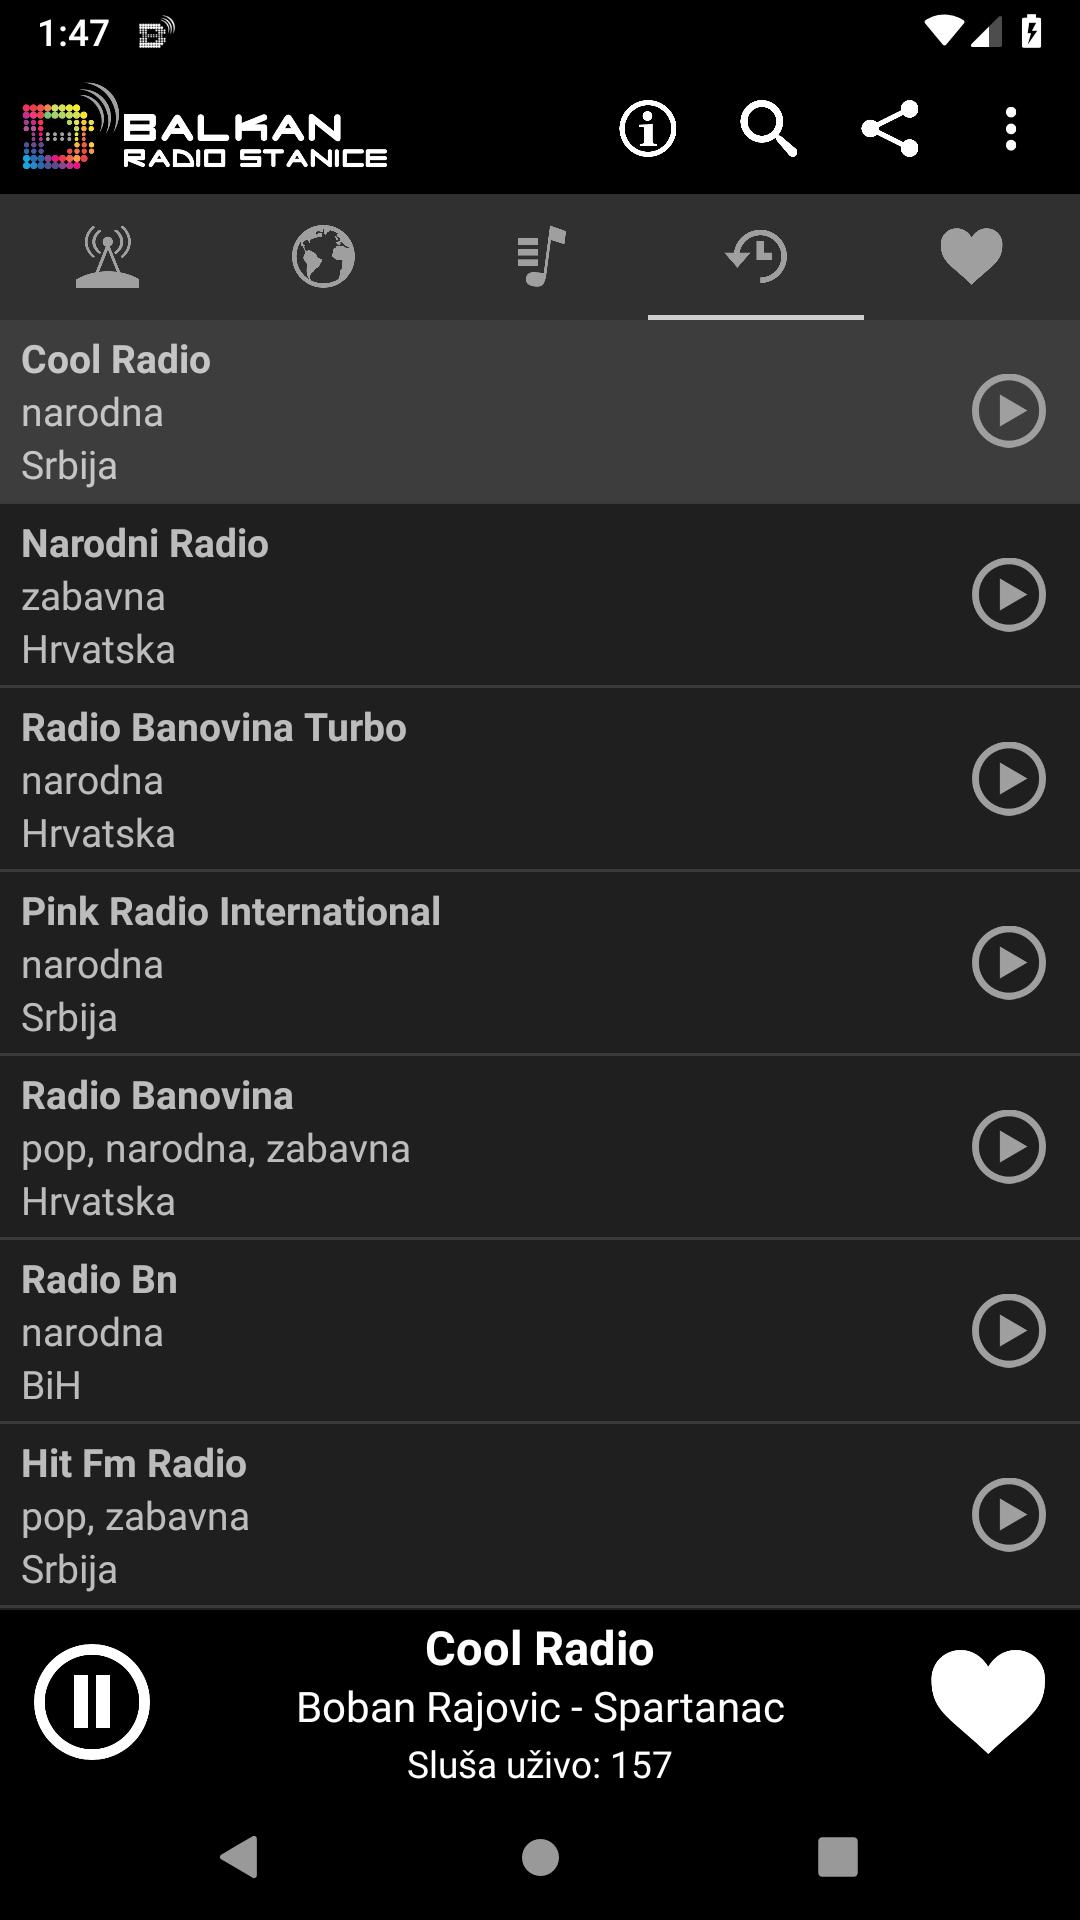 Balkan Radio Stanice für Android - APK herunterladen